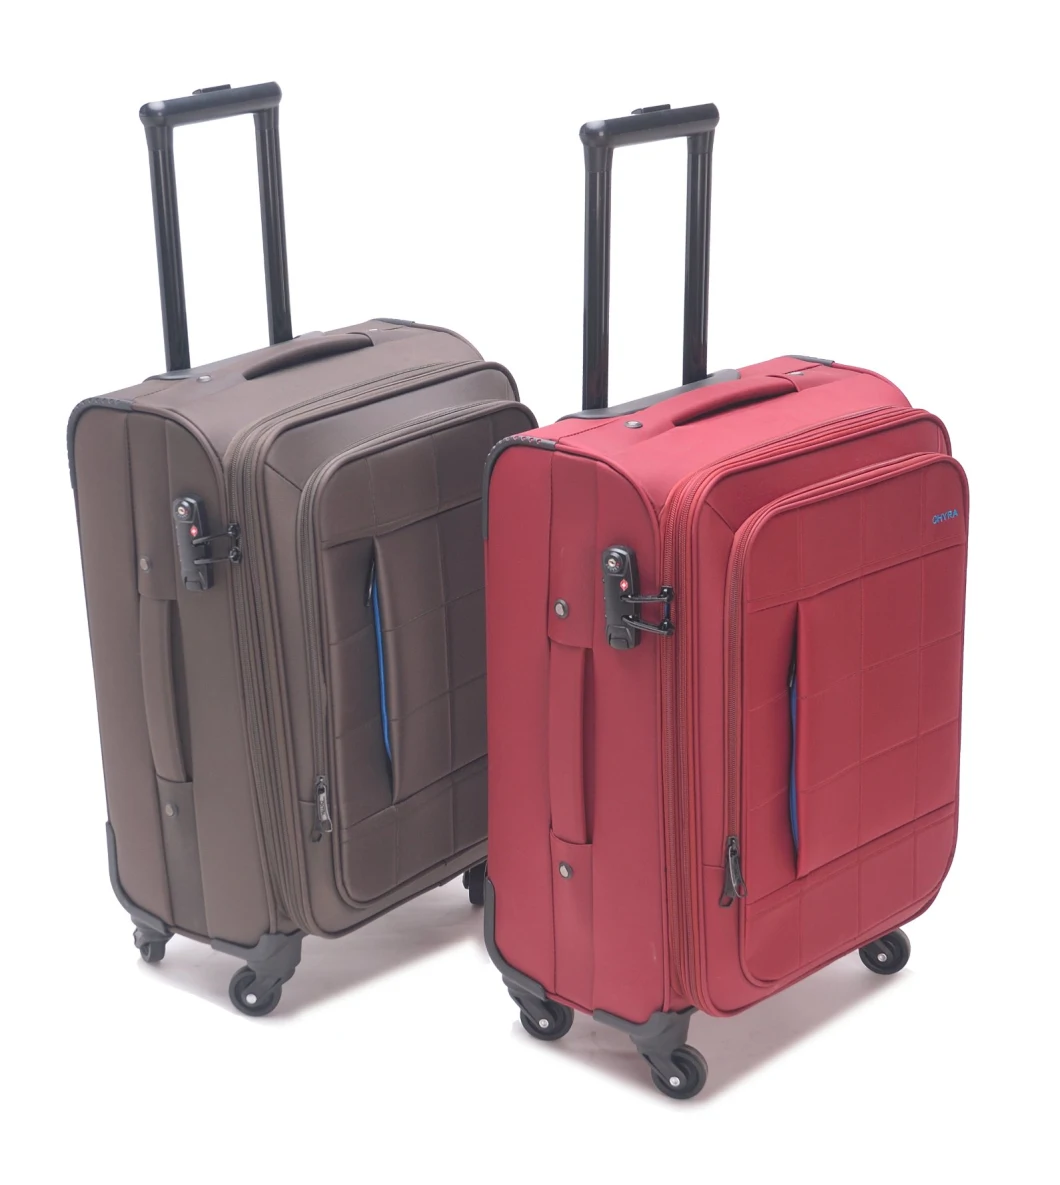 Tsa Lock Trolley Luggage Nylon Luggage Set Travel Luggage Soft Luggage